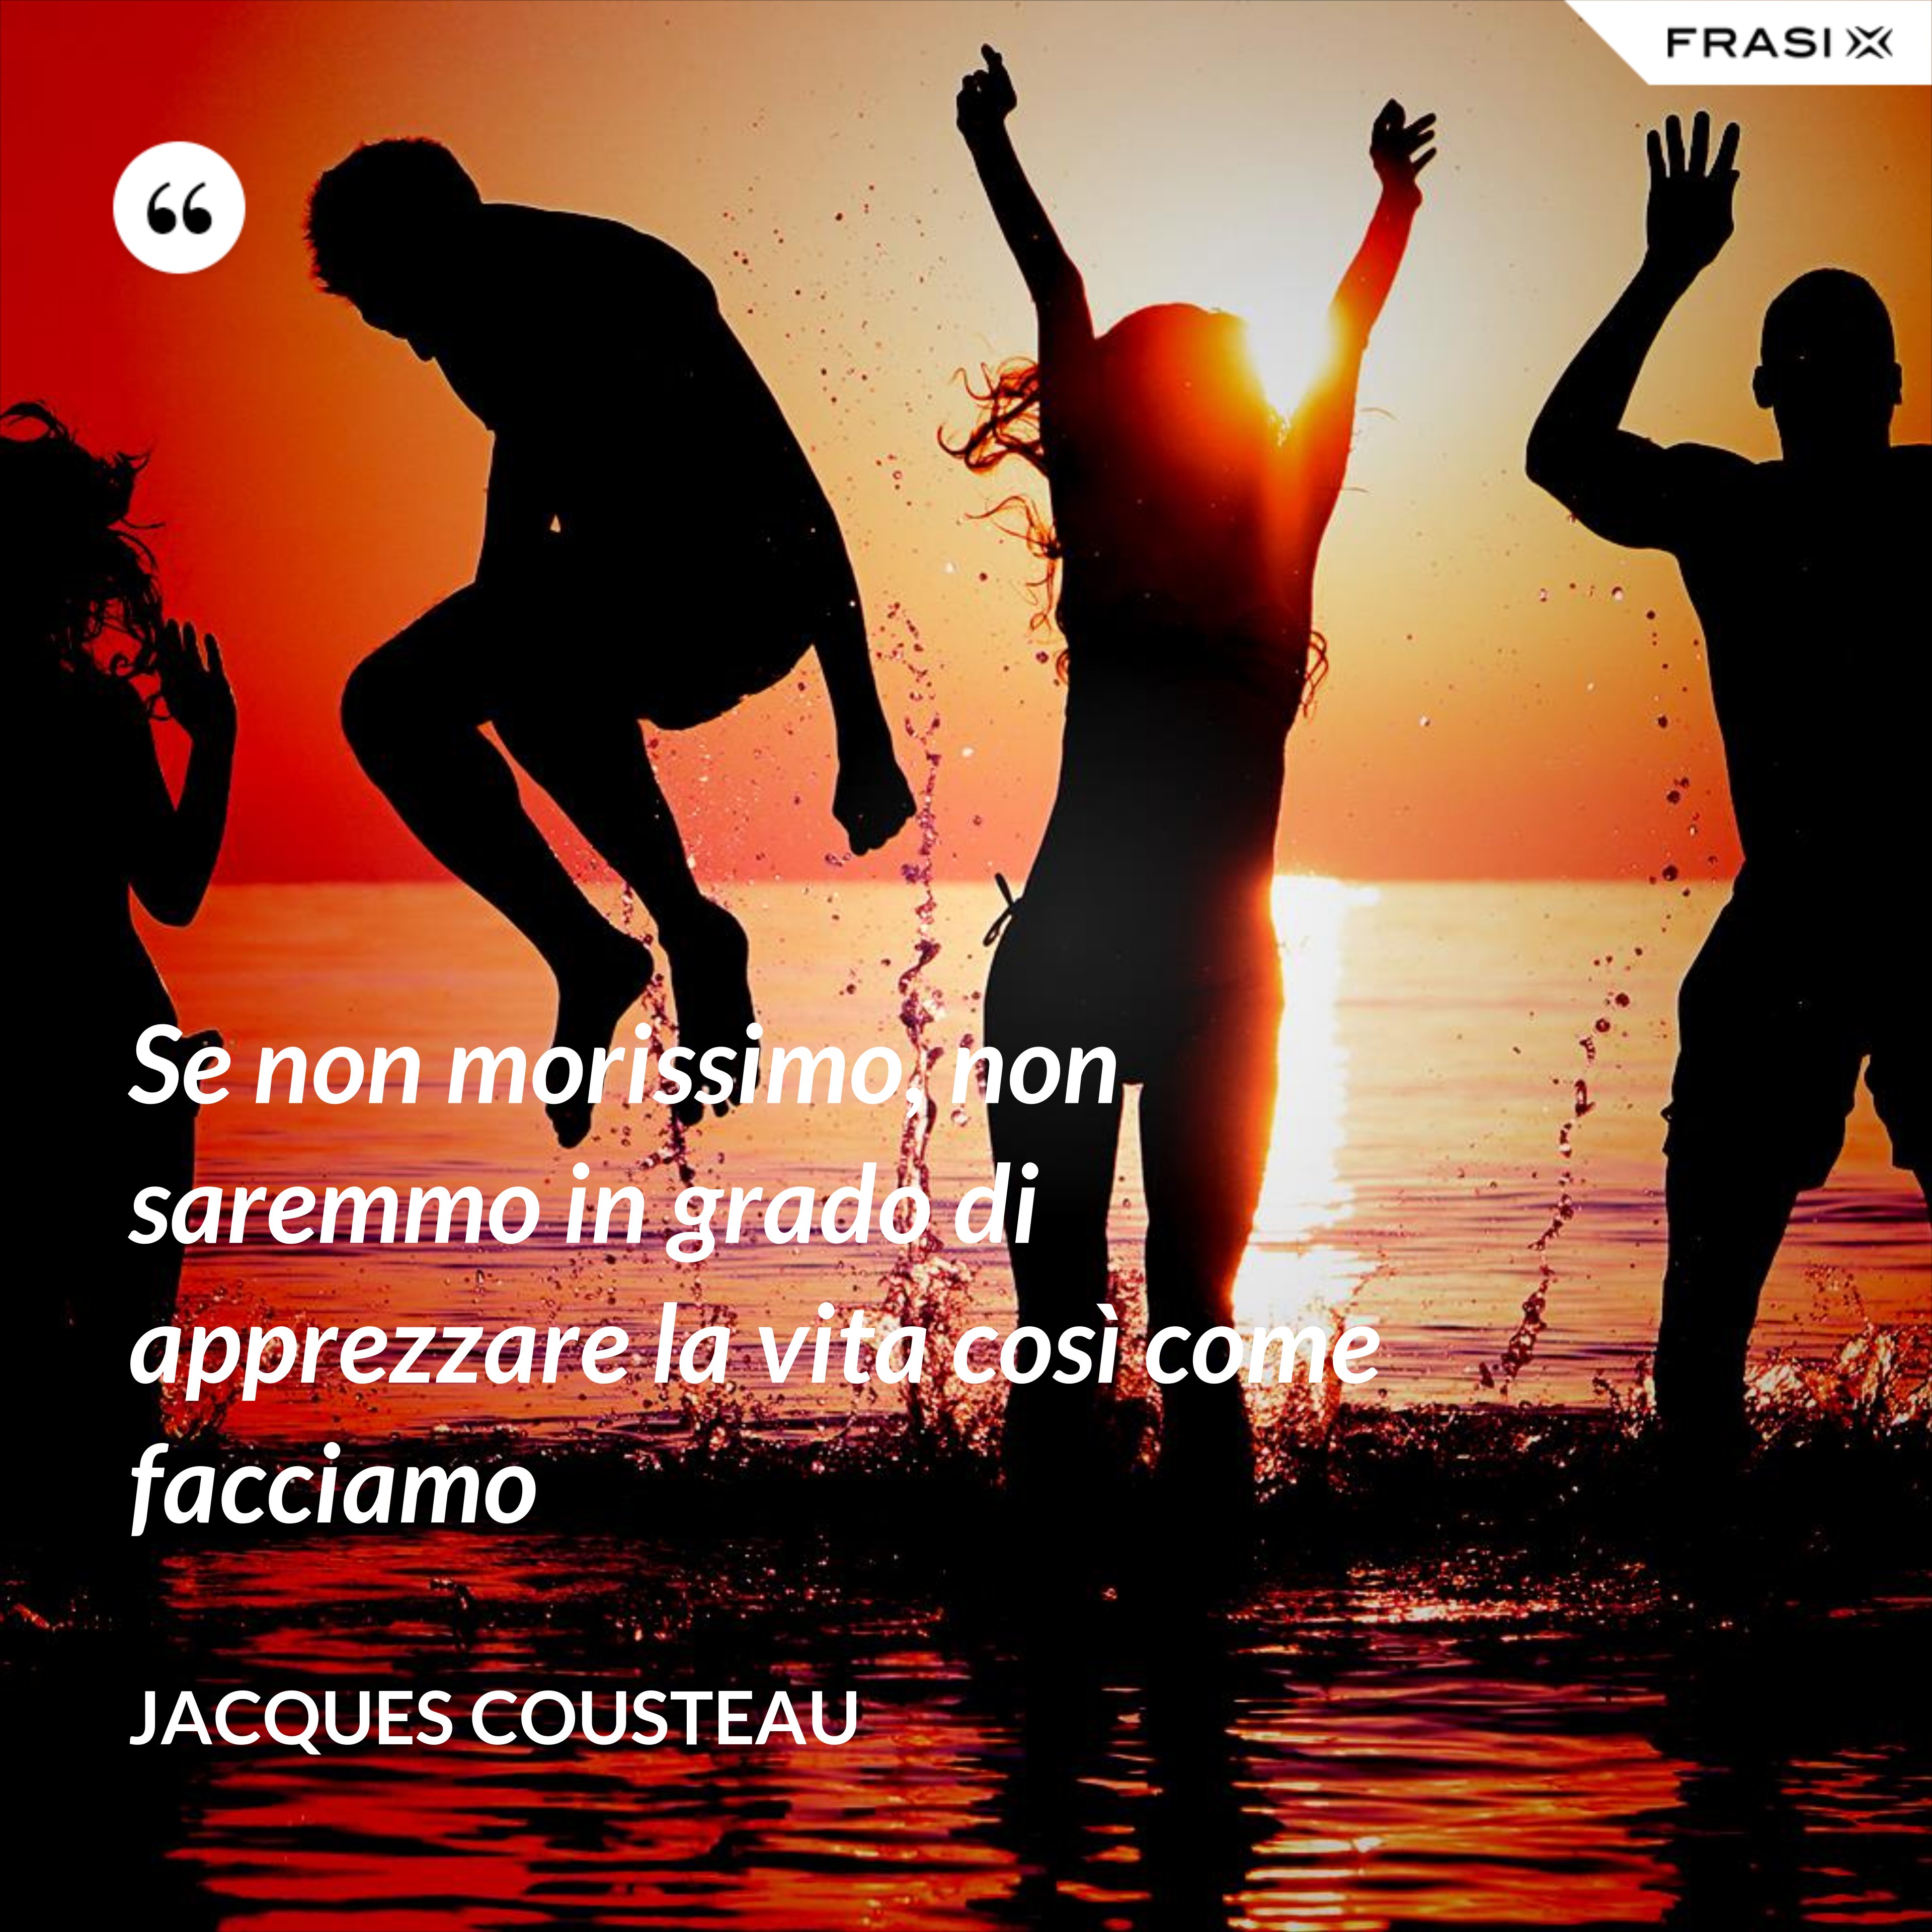 Se non morissimo, non saremmo in grado di apprezzare la vita così come facciamo - Jacques Cousteau